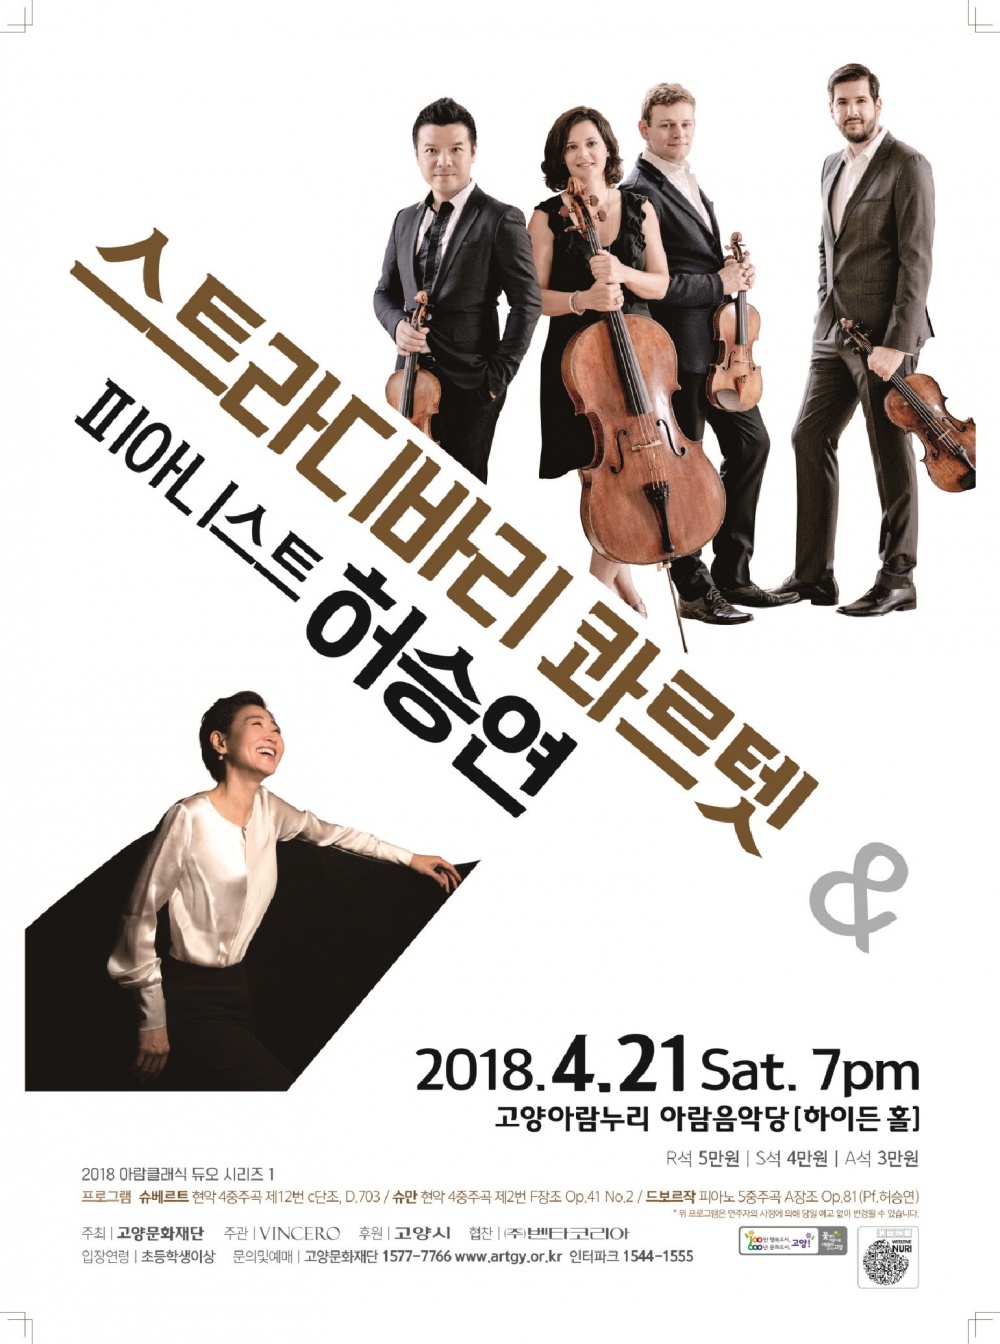 현악 4중주단 스트라디바리 콰르텟 내한공연, 4월 21일 고양아람누리 열려